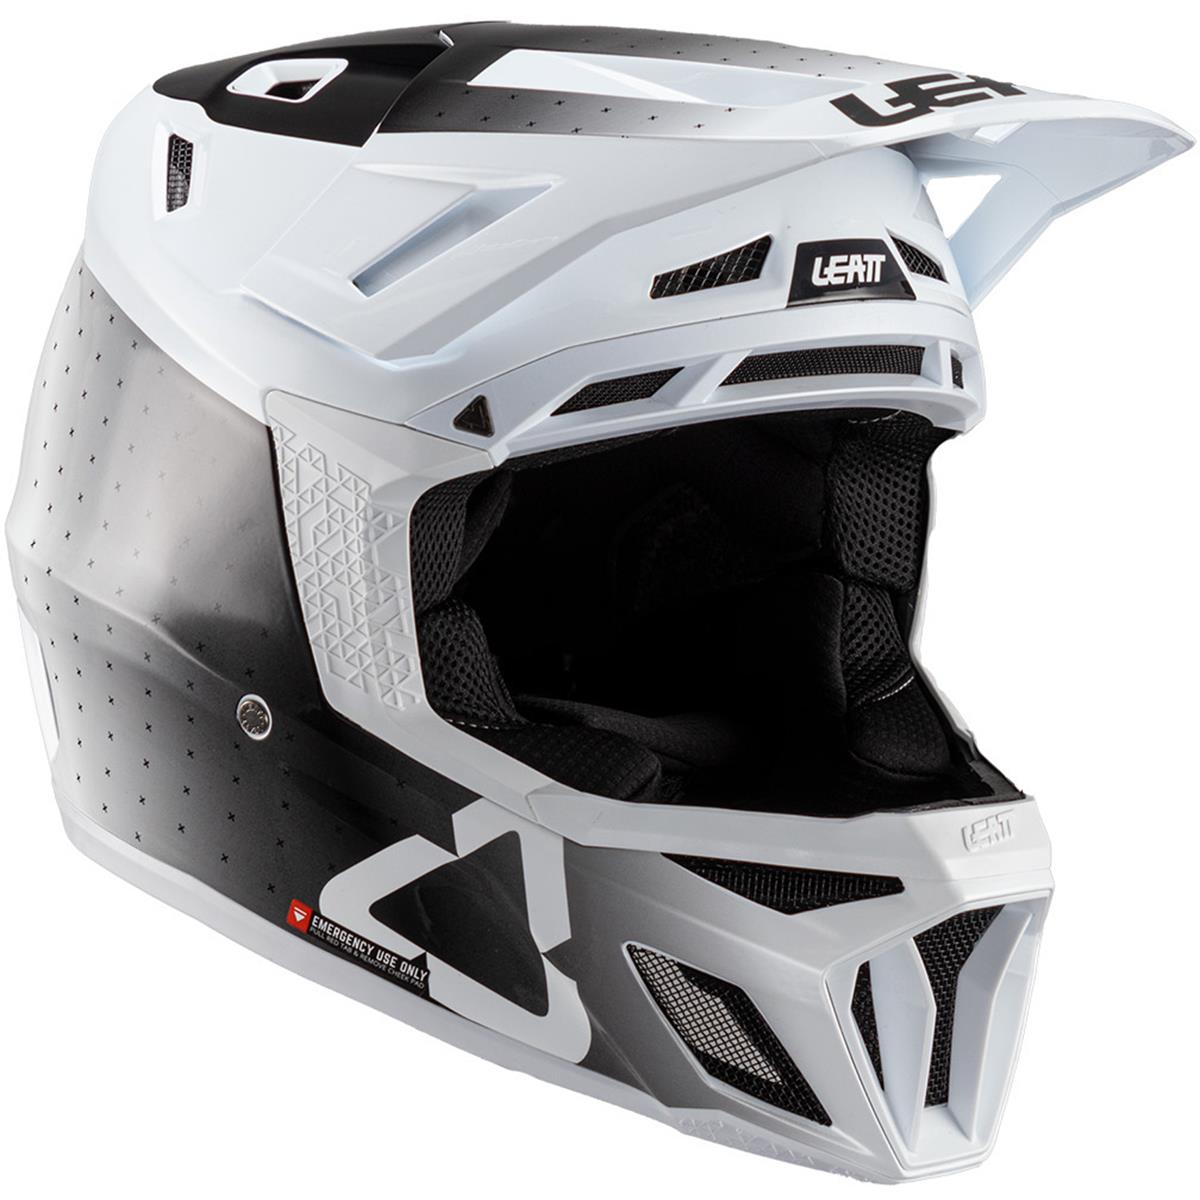 Leatt Downhill MTB Helmet 8.0 Gravity Composite White